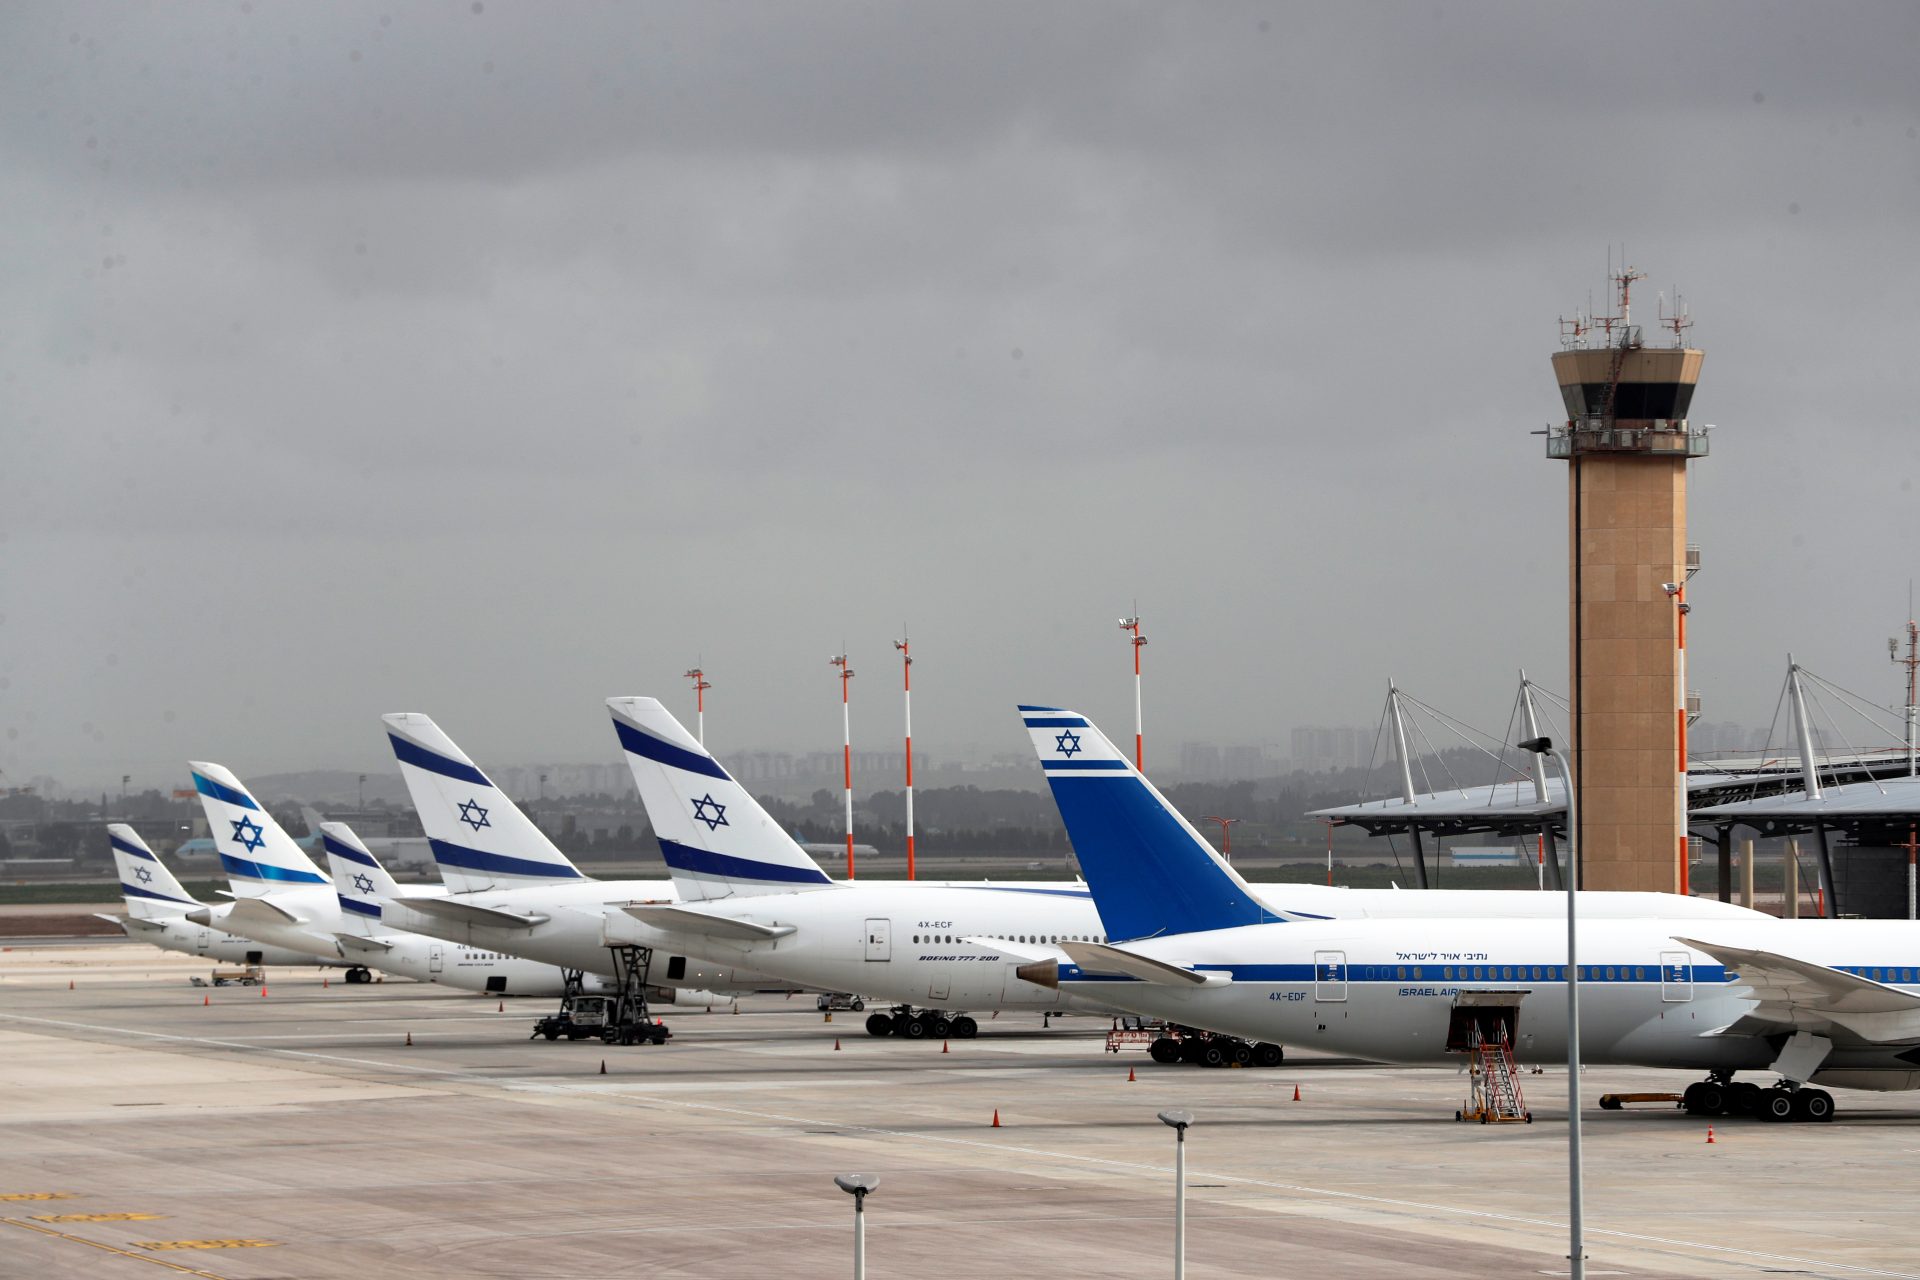 Les compagnies aériennes reviennent-elles en Israël malgré la guerre à Gaza ?